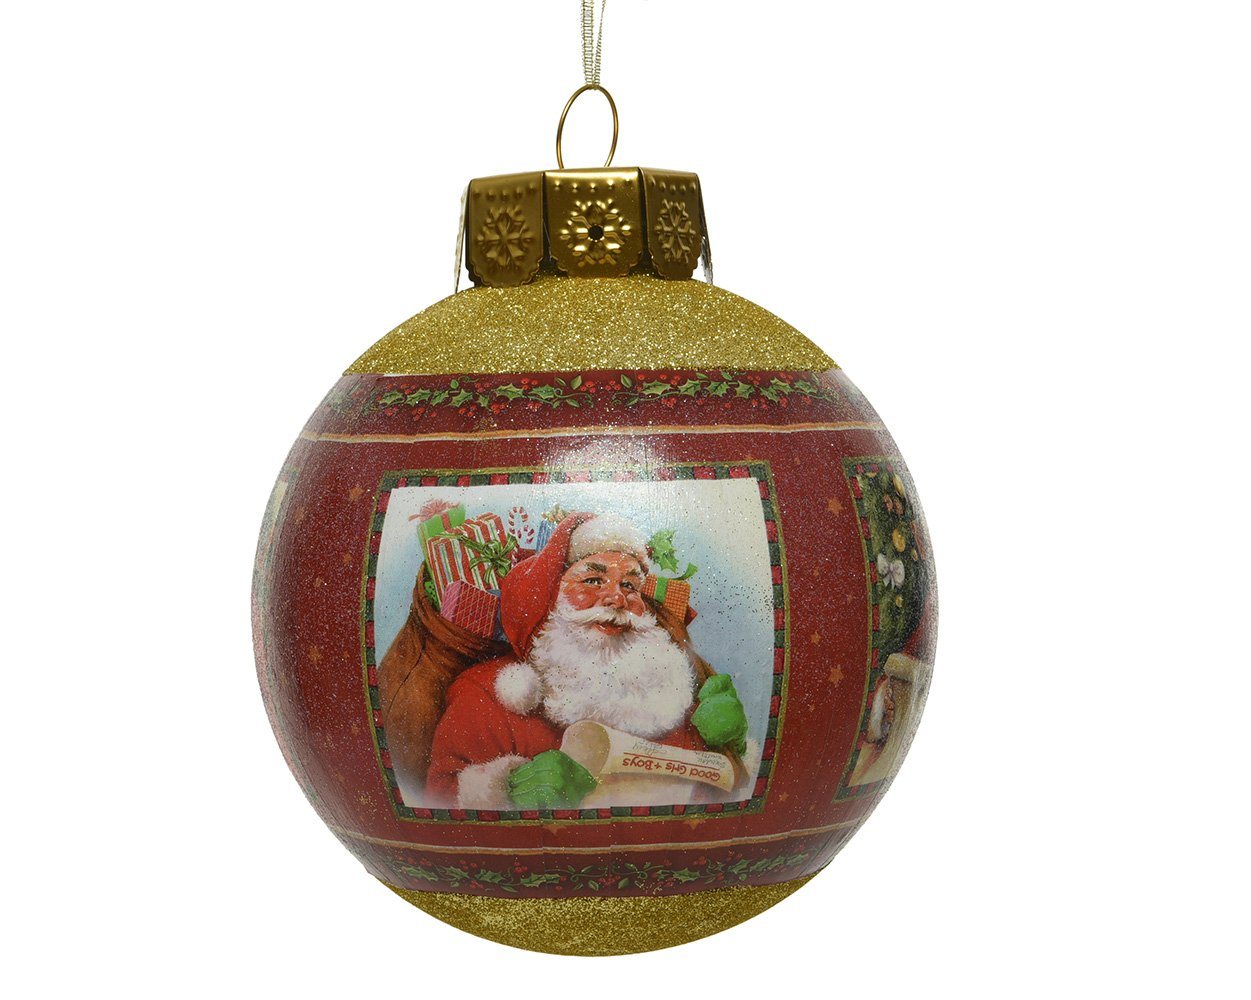 Decoris season decorations Weihnachtsbaumkugel, Weihnachtskugeln Kunststoff mit Weihnachtsmann Motiven 20cm rot / gold von Decoris season decorations